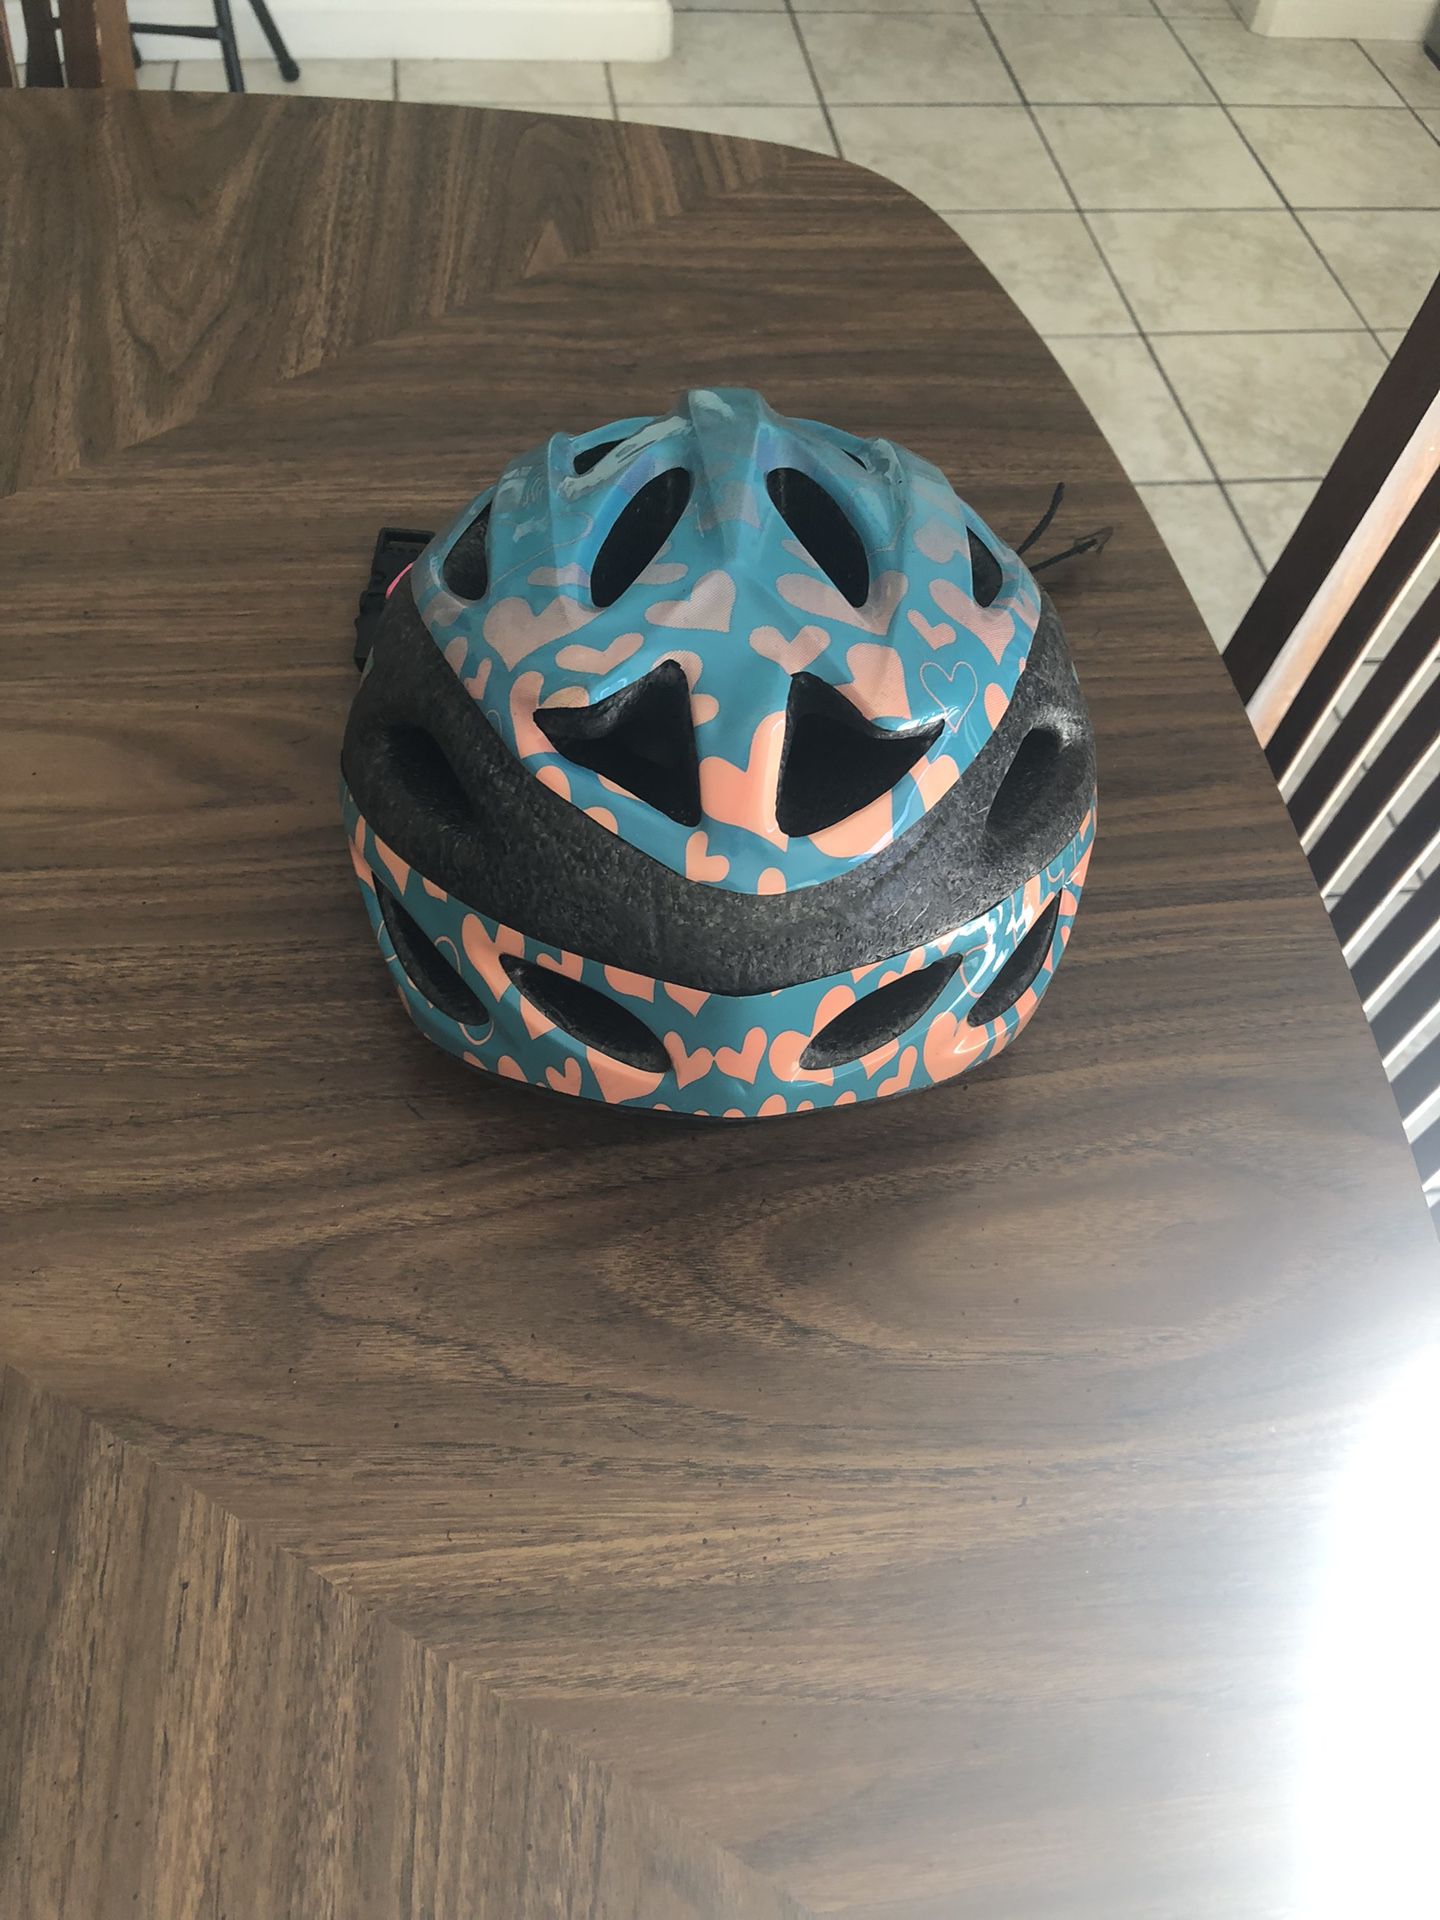 Kids Bike Helmet For Sell